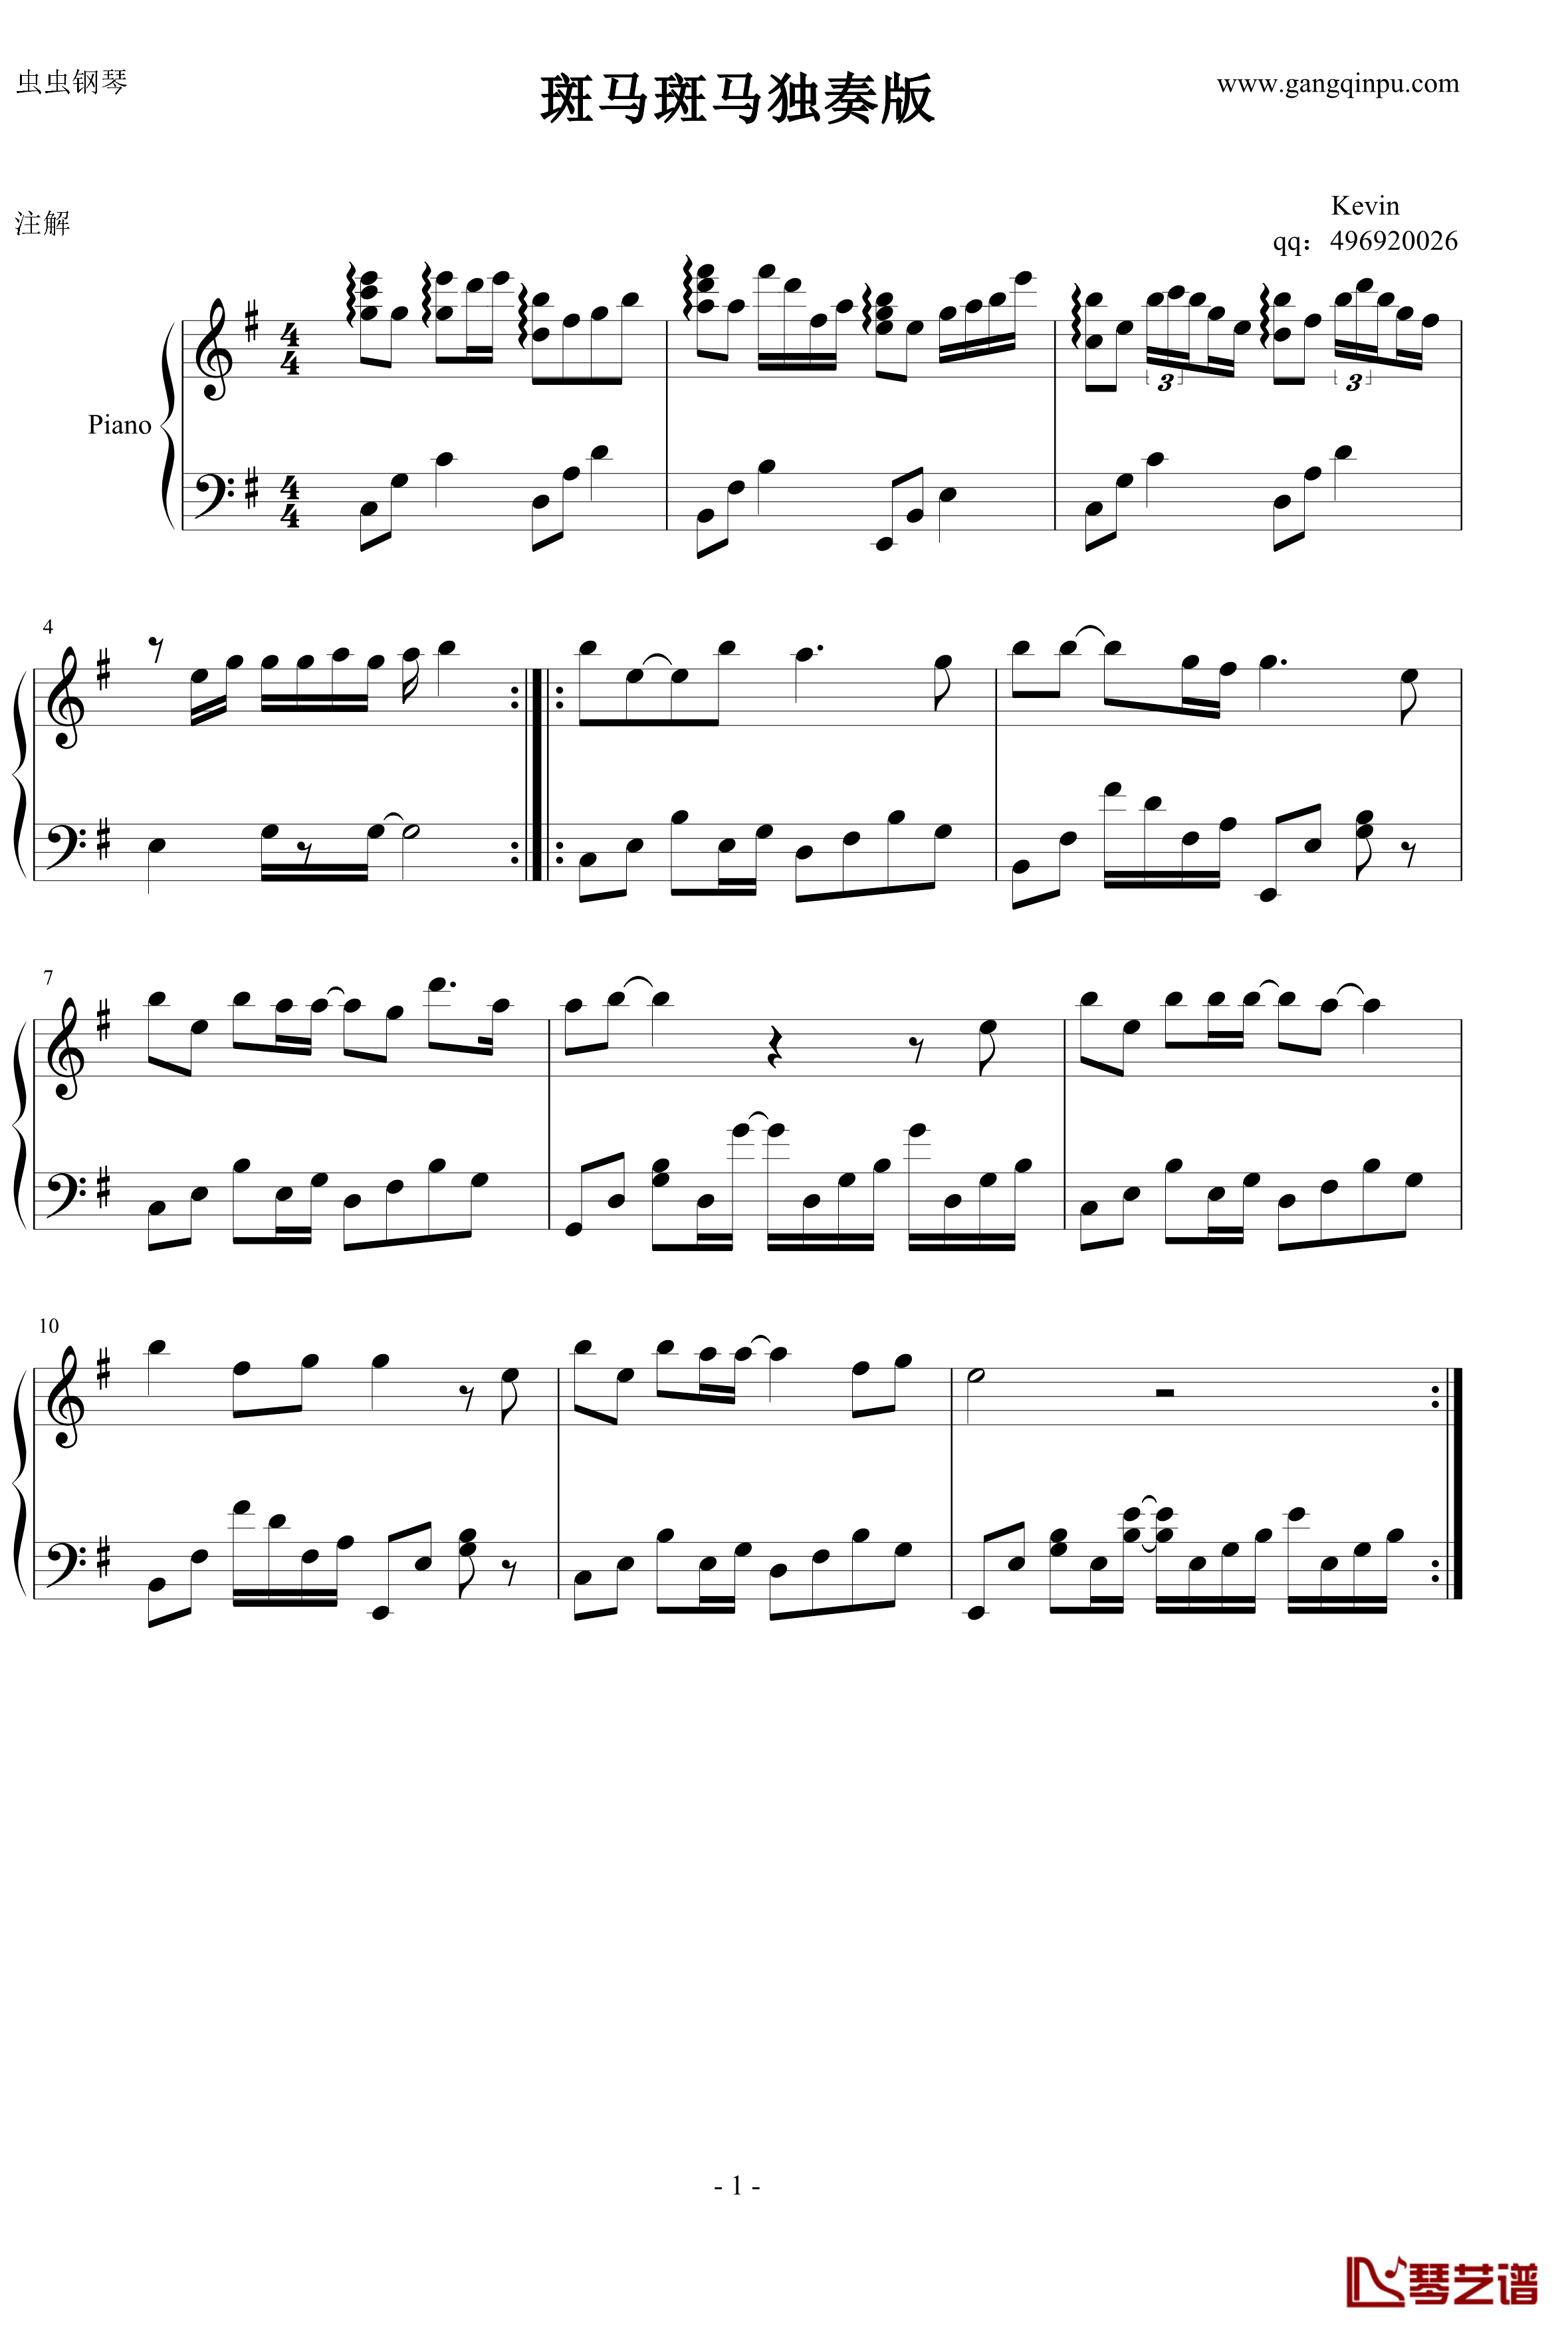 斑马斑马钢琴谱-独奏版-宋东野1